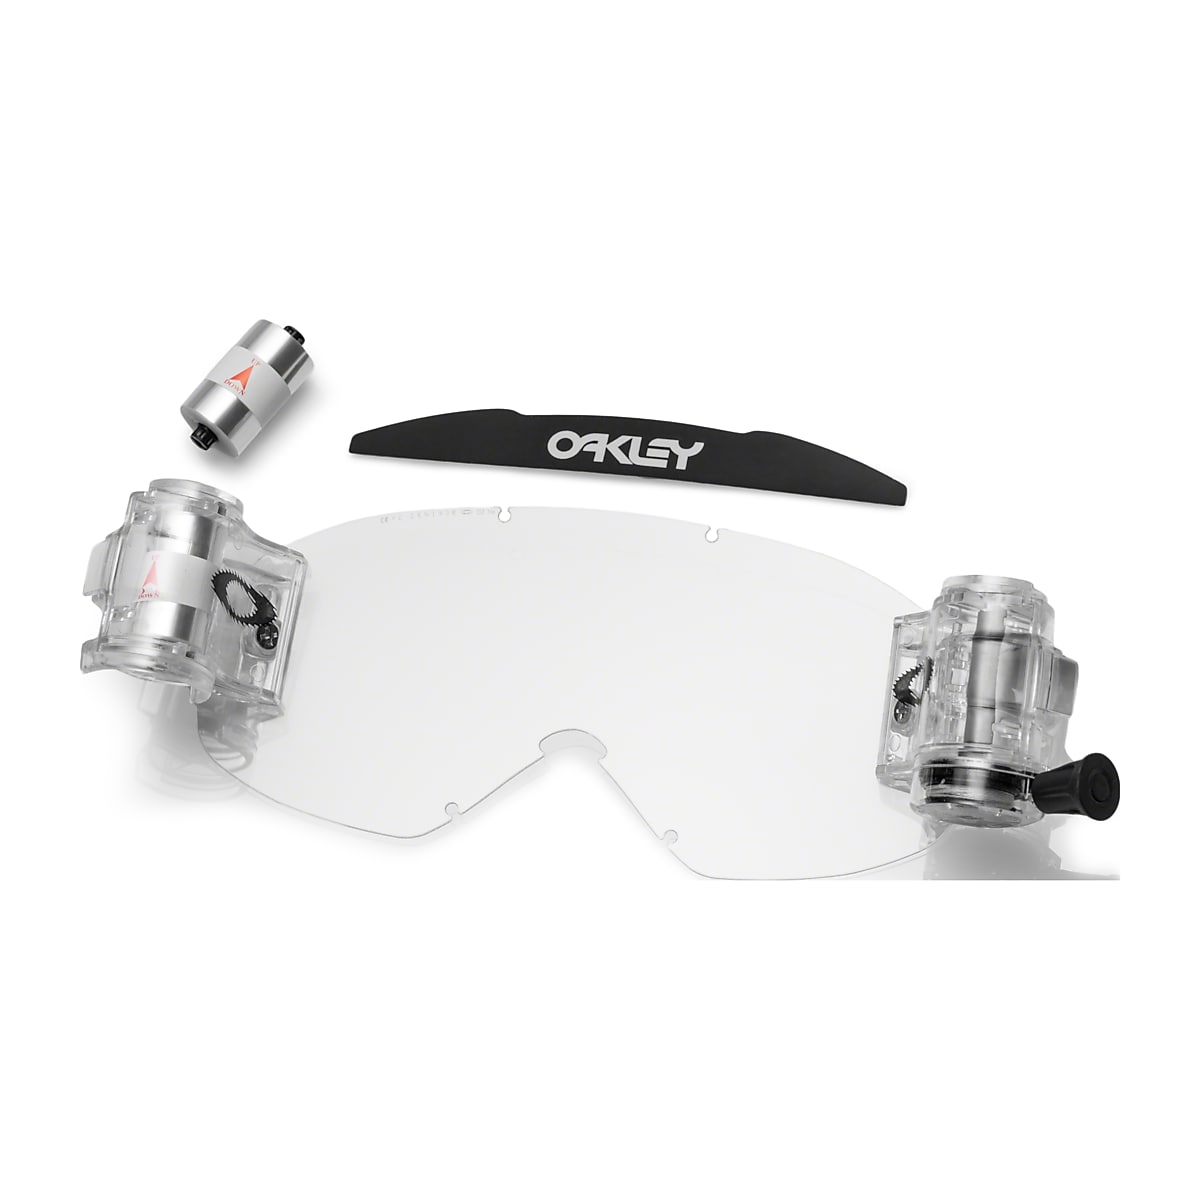 Oakley 2.0 MX Roll-Off Accessory Kit - Clear | Oakley®